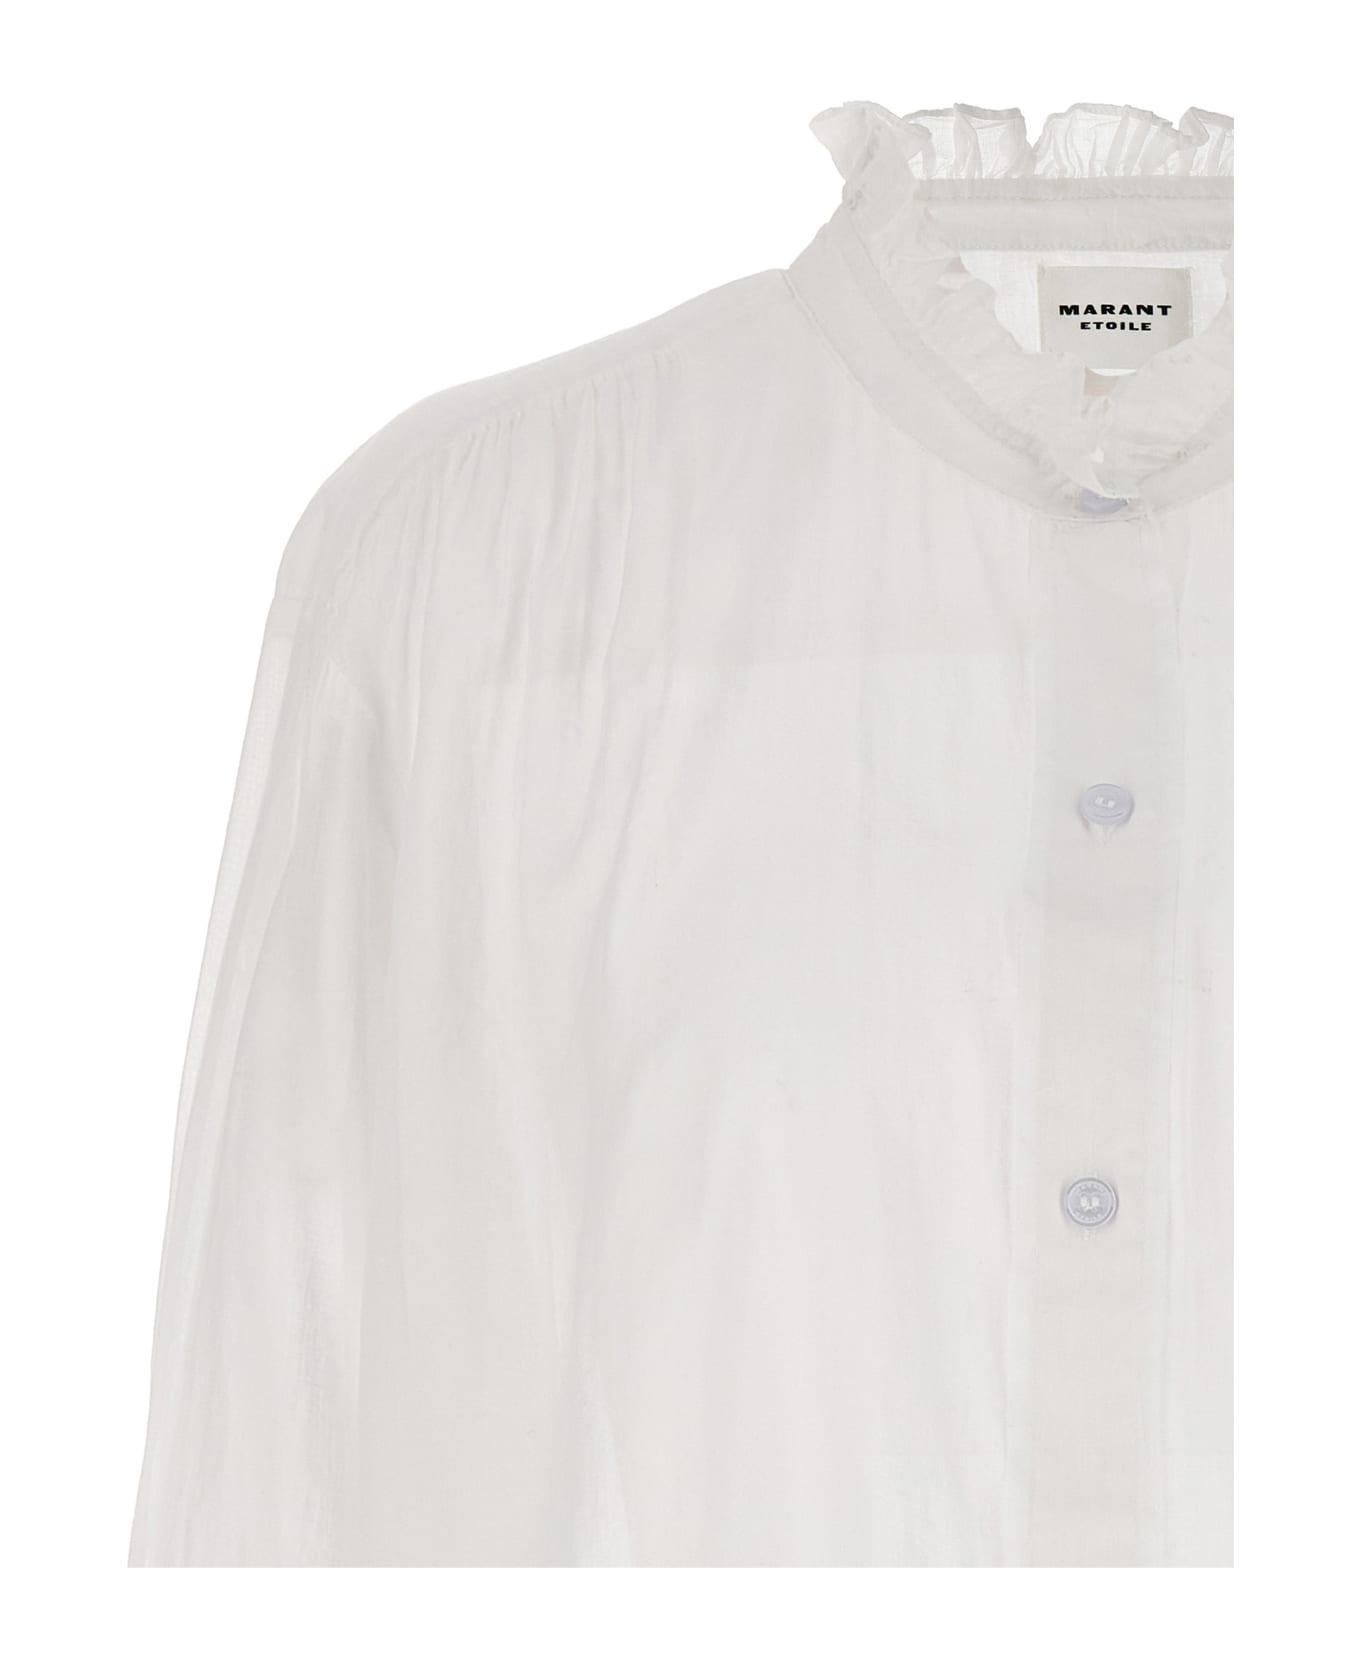 Marant Étoile 'gamble' Shirt - White